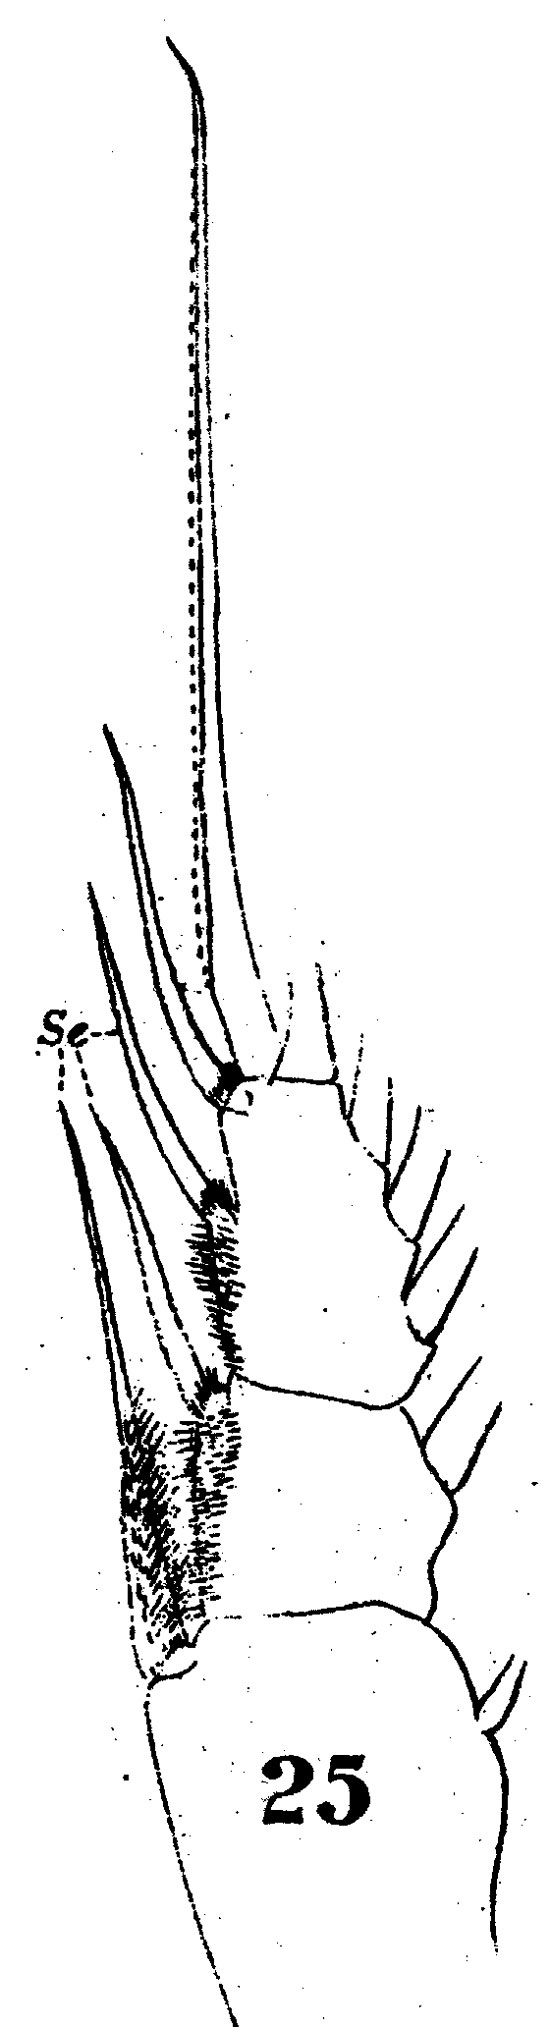 Espce Haloptilus chierchiae - Planche 7 de figures morphologiques